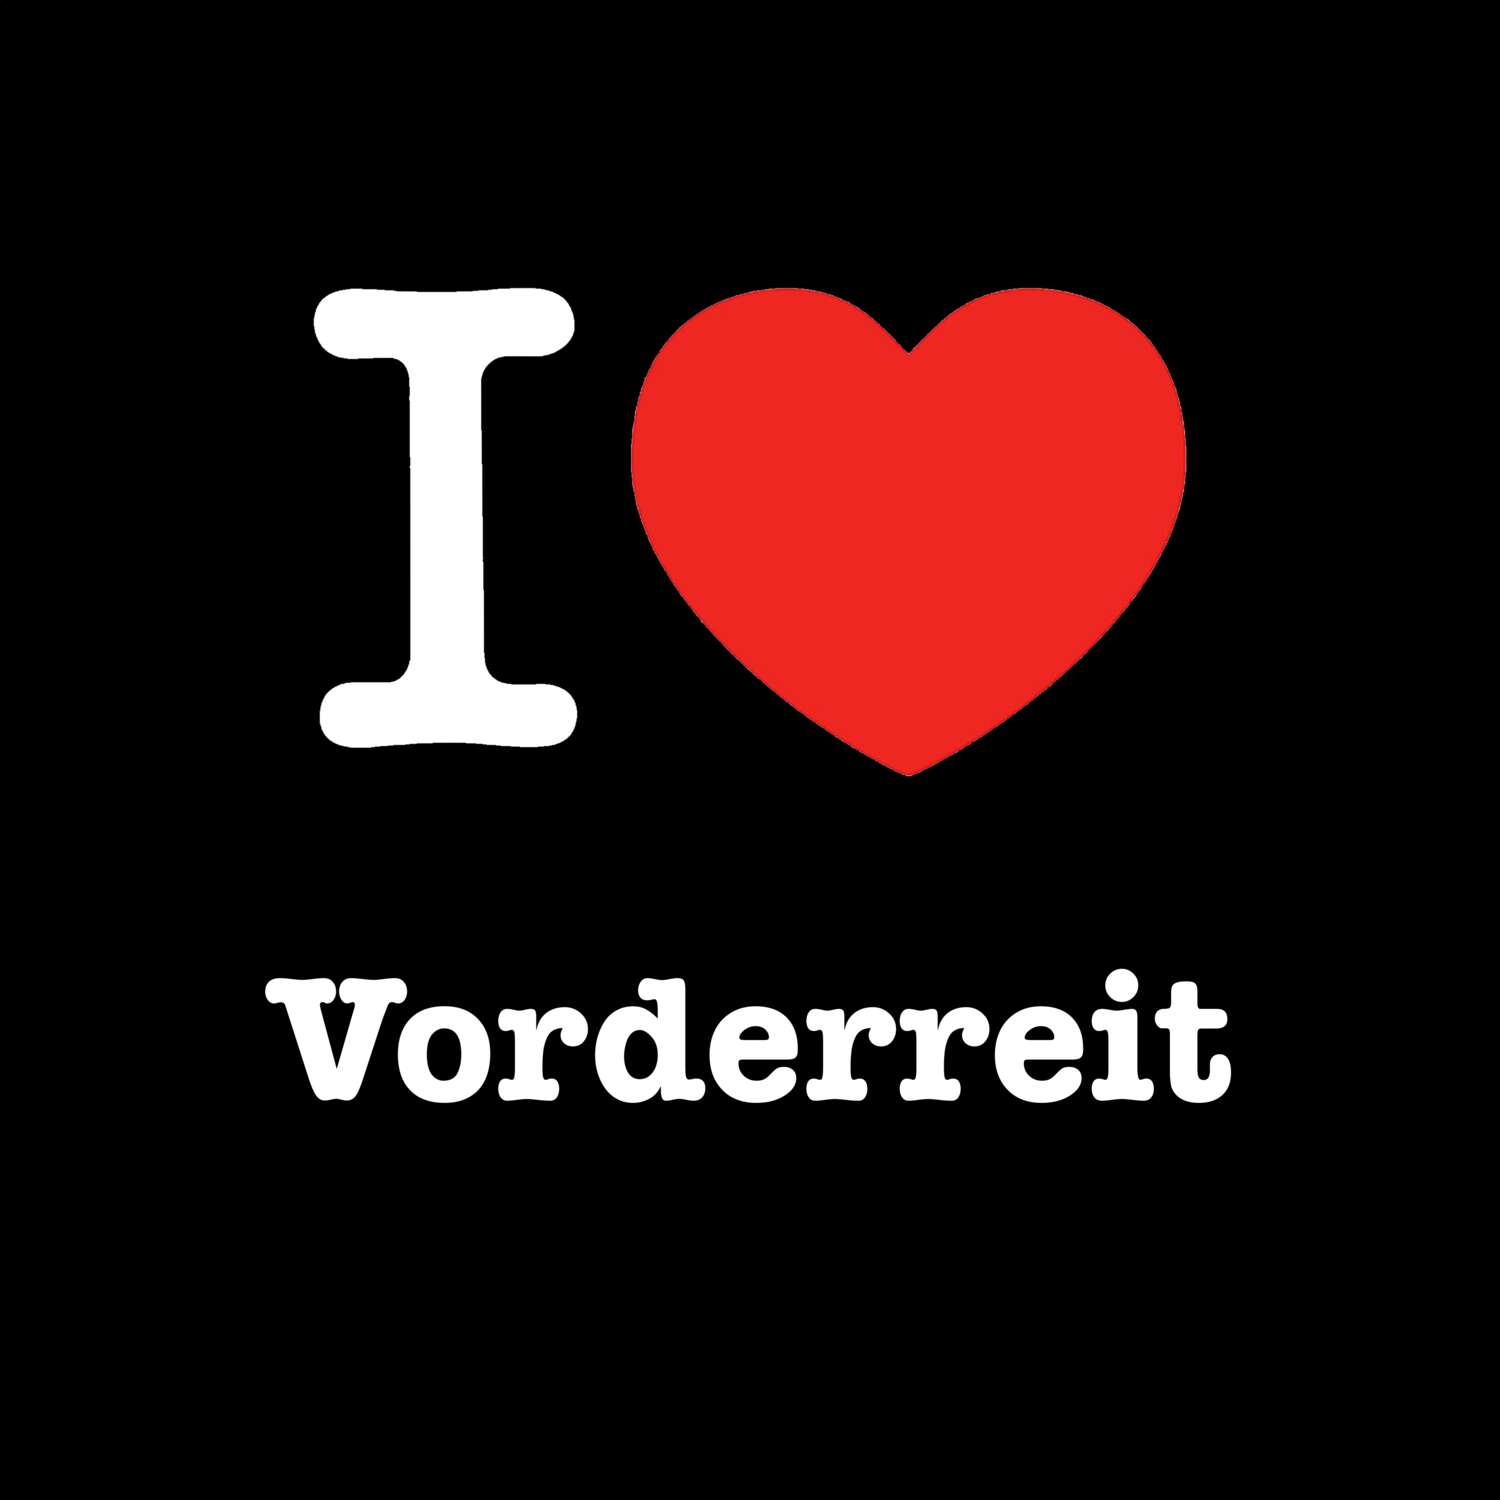 Vorderreit T-Shirt »I love«